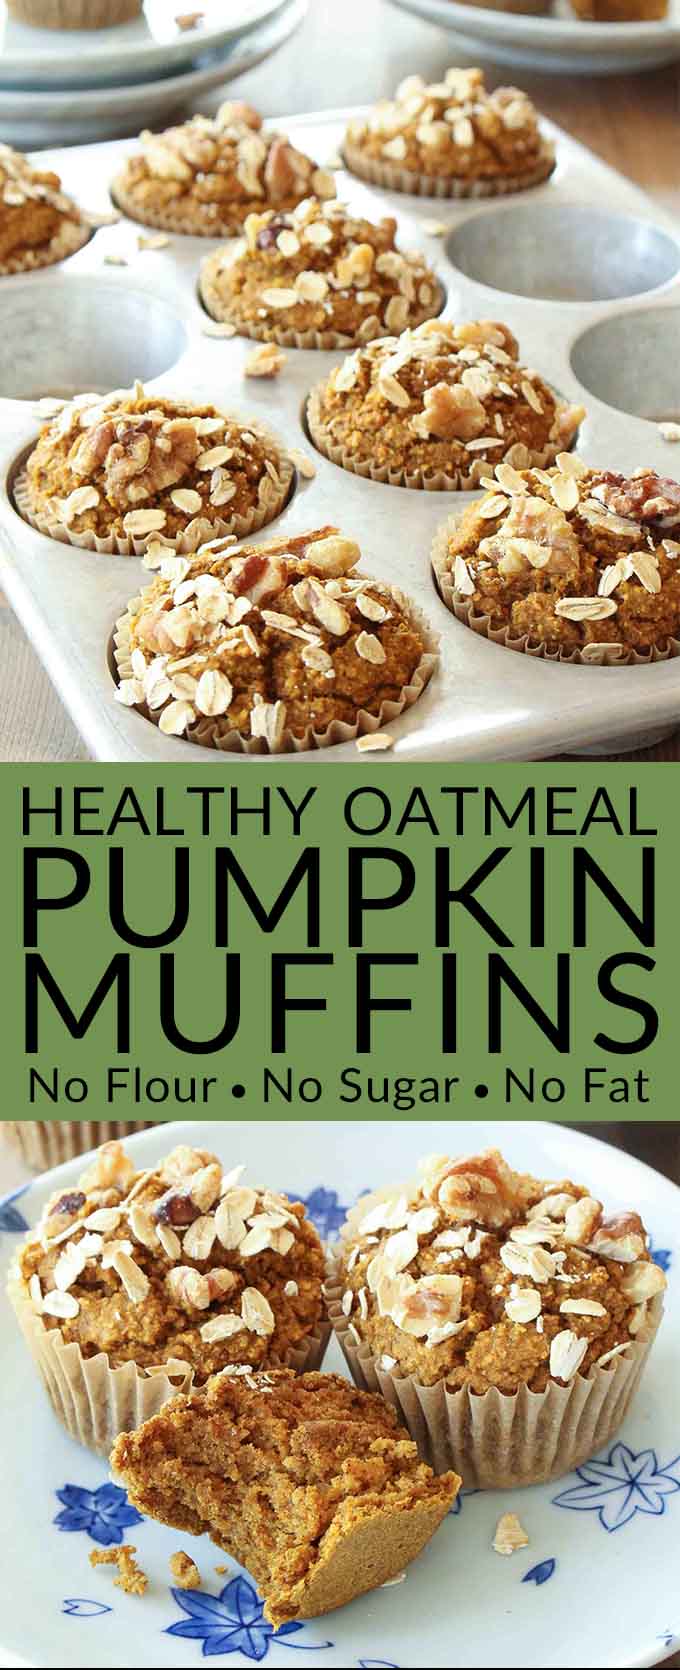 muffins pumpkin sugar healthy recipe flour oil dairy muffin recipes brendid oatmeal butter gluten peanut 13k visit